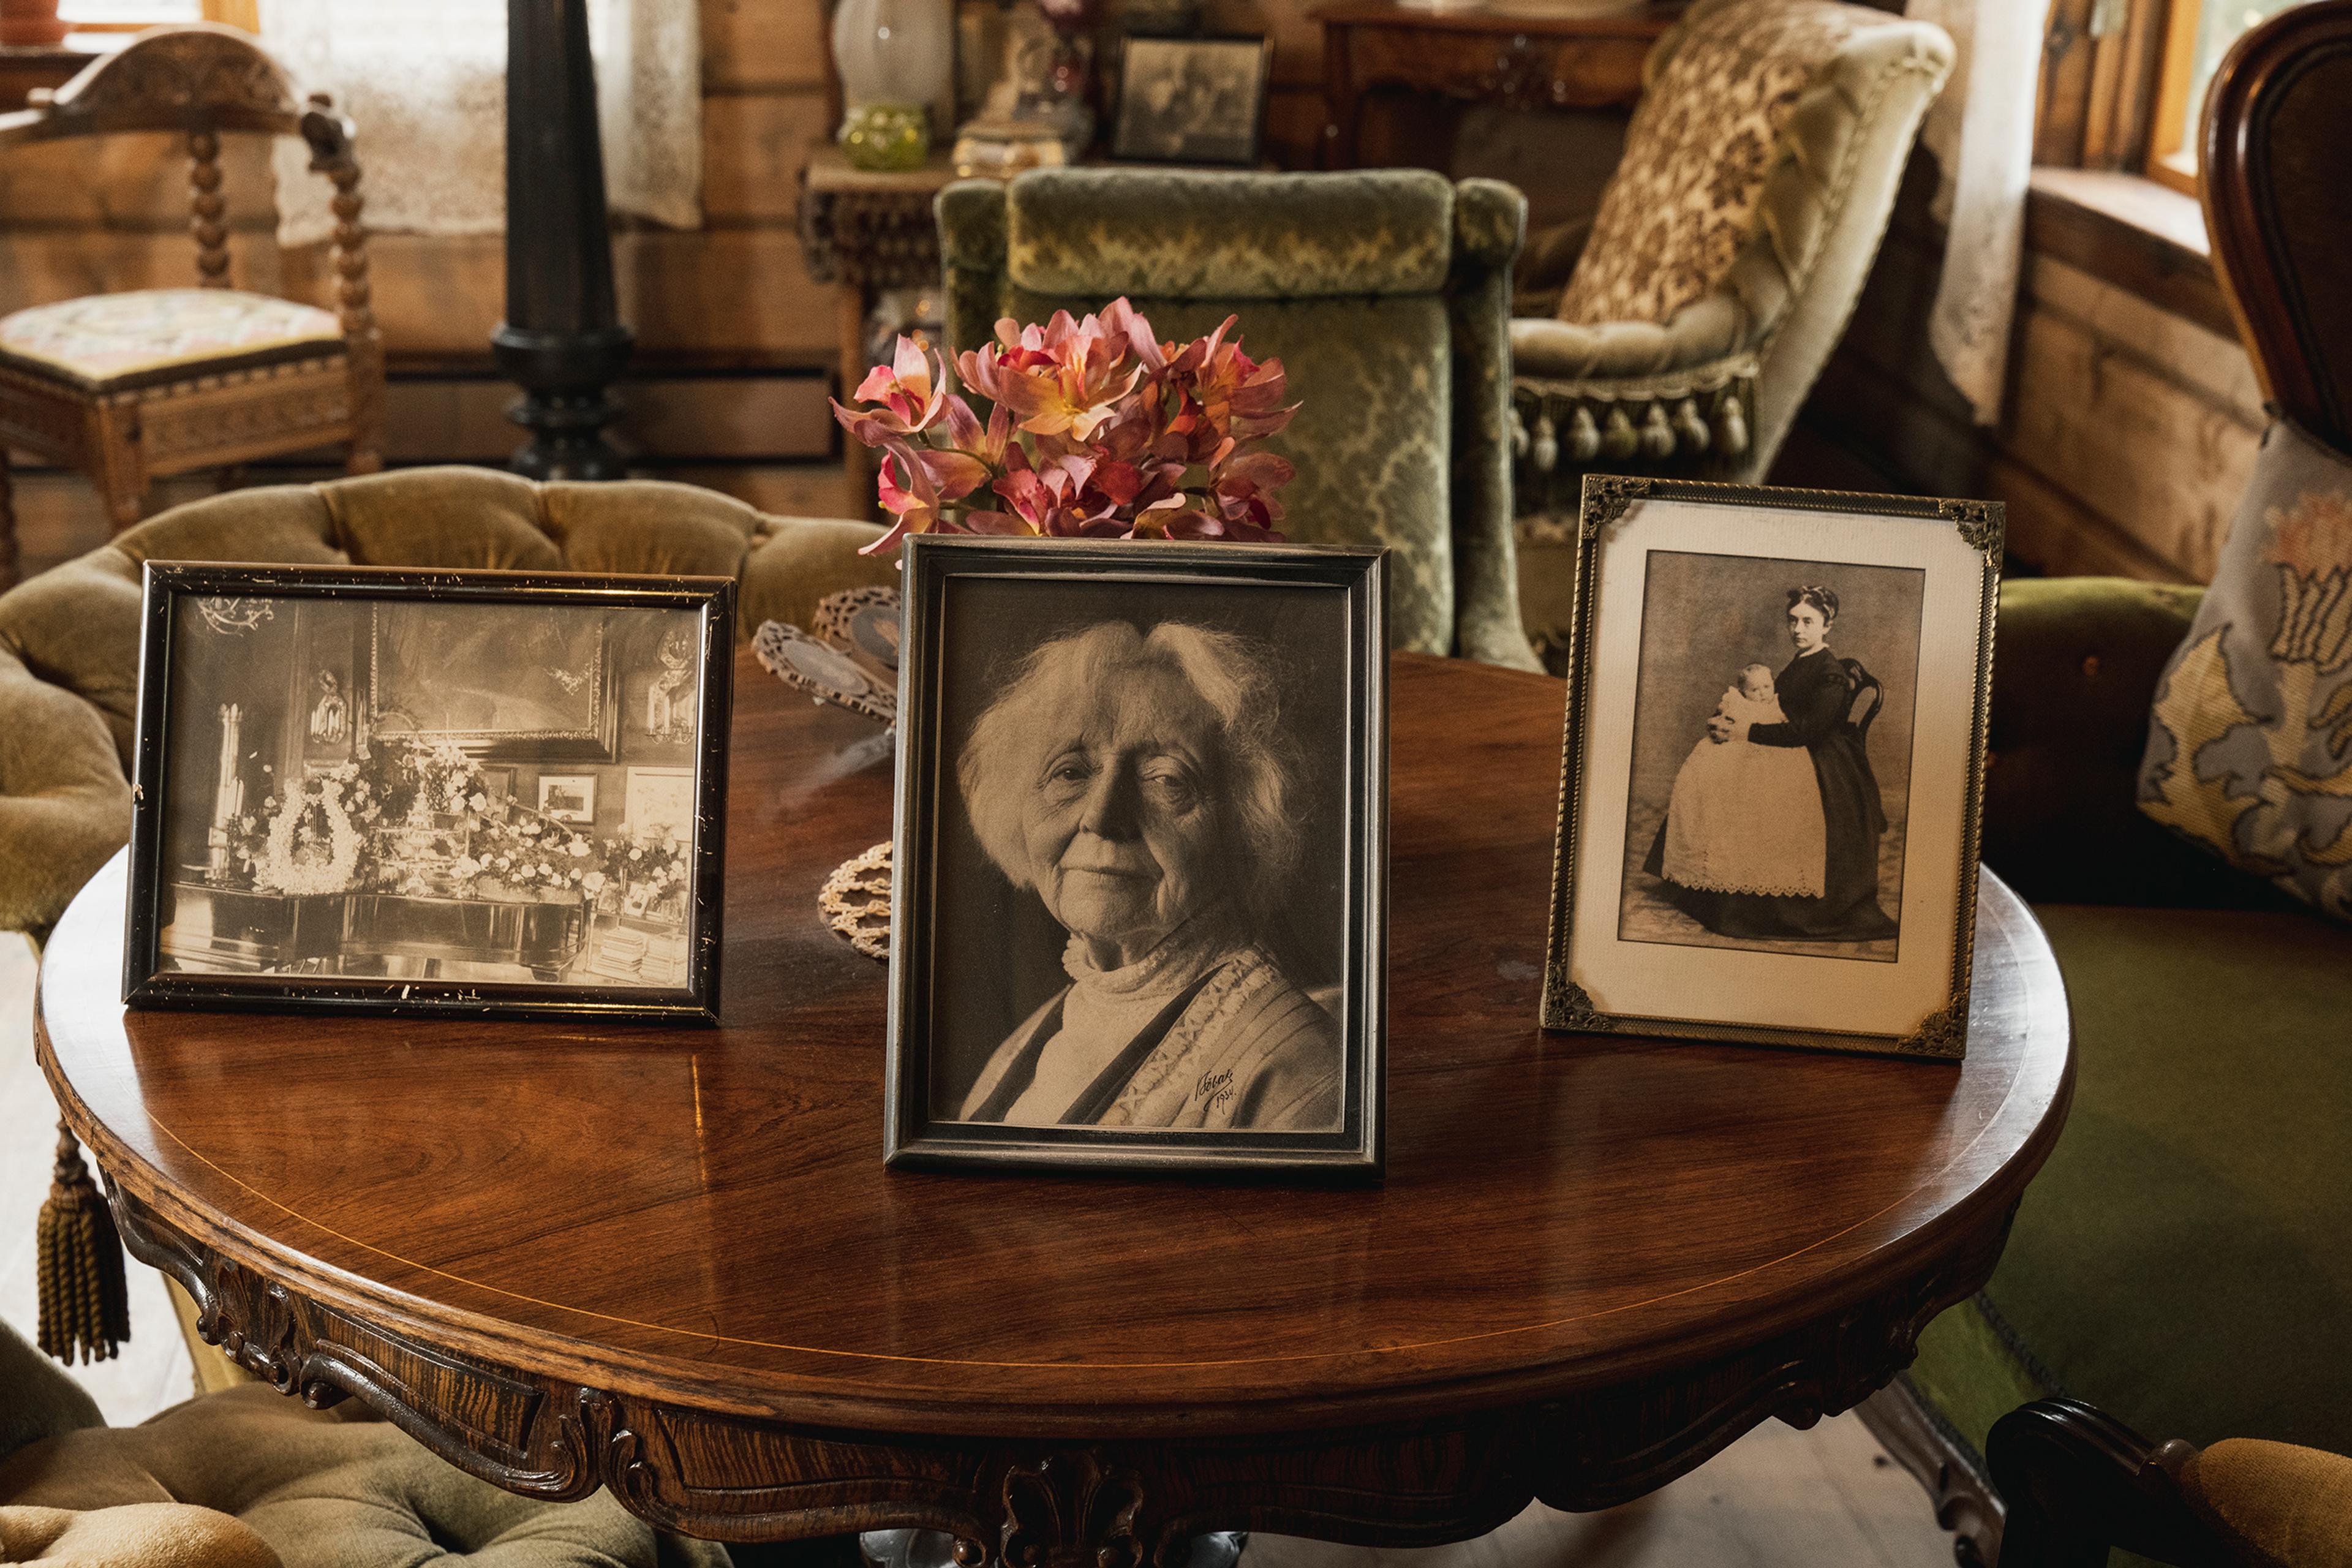 Et bord i stuen på Troldhaugen. Vi ser fotografier, blant annet et av Nina Grieg.